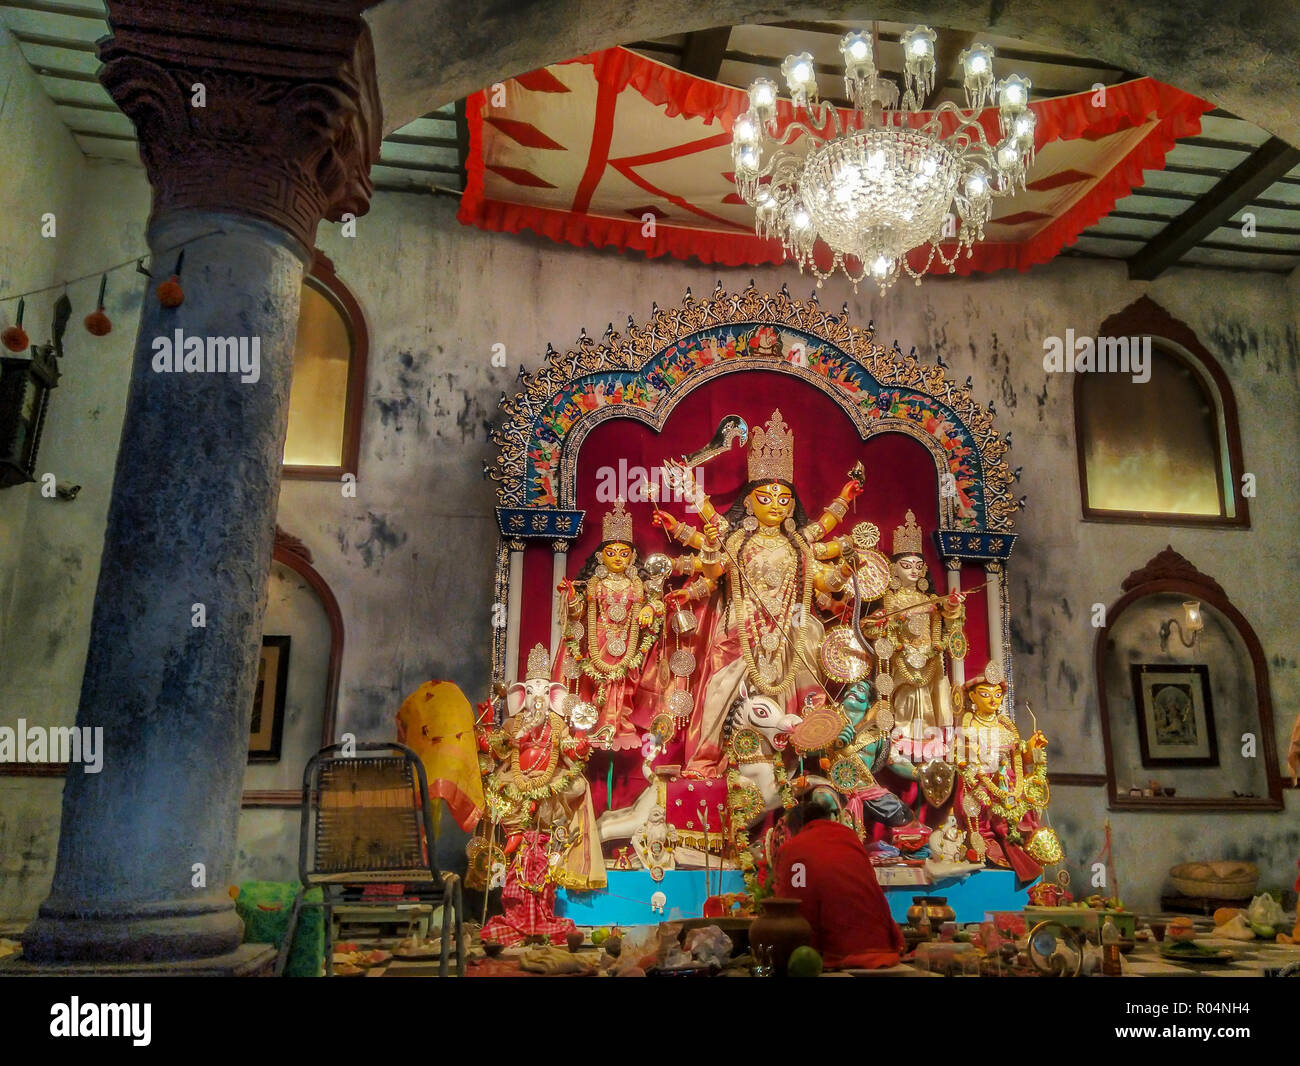 Tradizionale Durga Puja in corrispondenza di una vecchia casa in Bengali Foto Stock